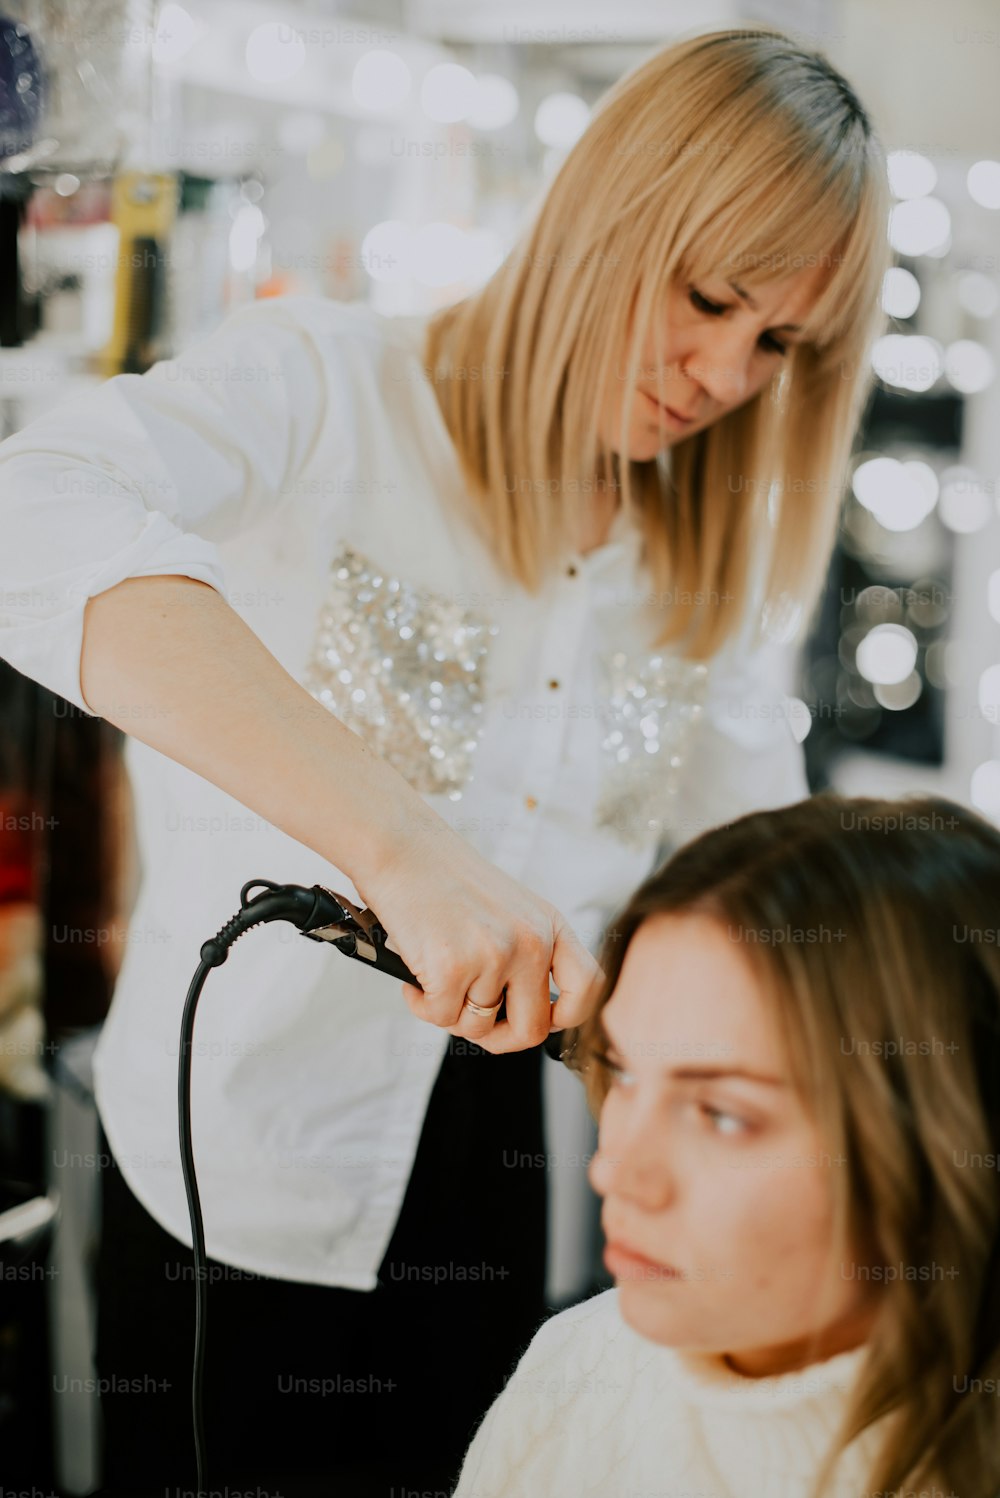 Eine Frau, die einer anderen Frau in einem Salon die Haare schneidet